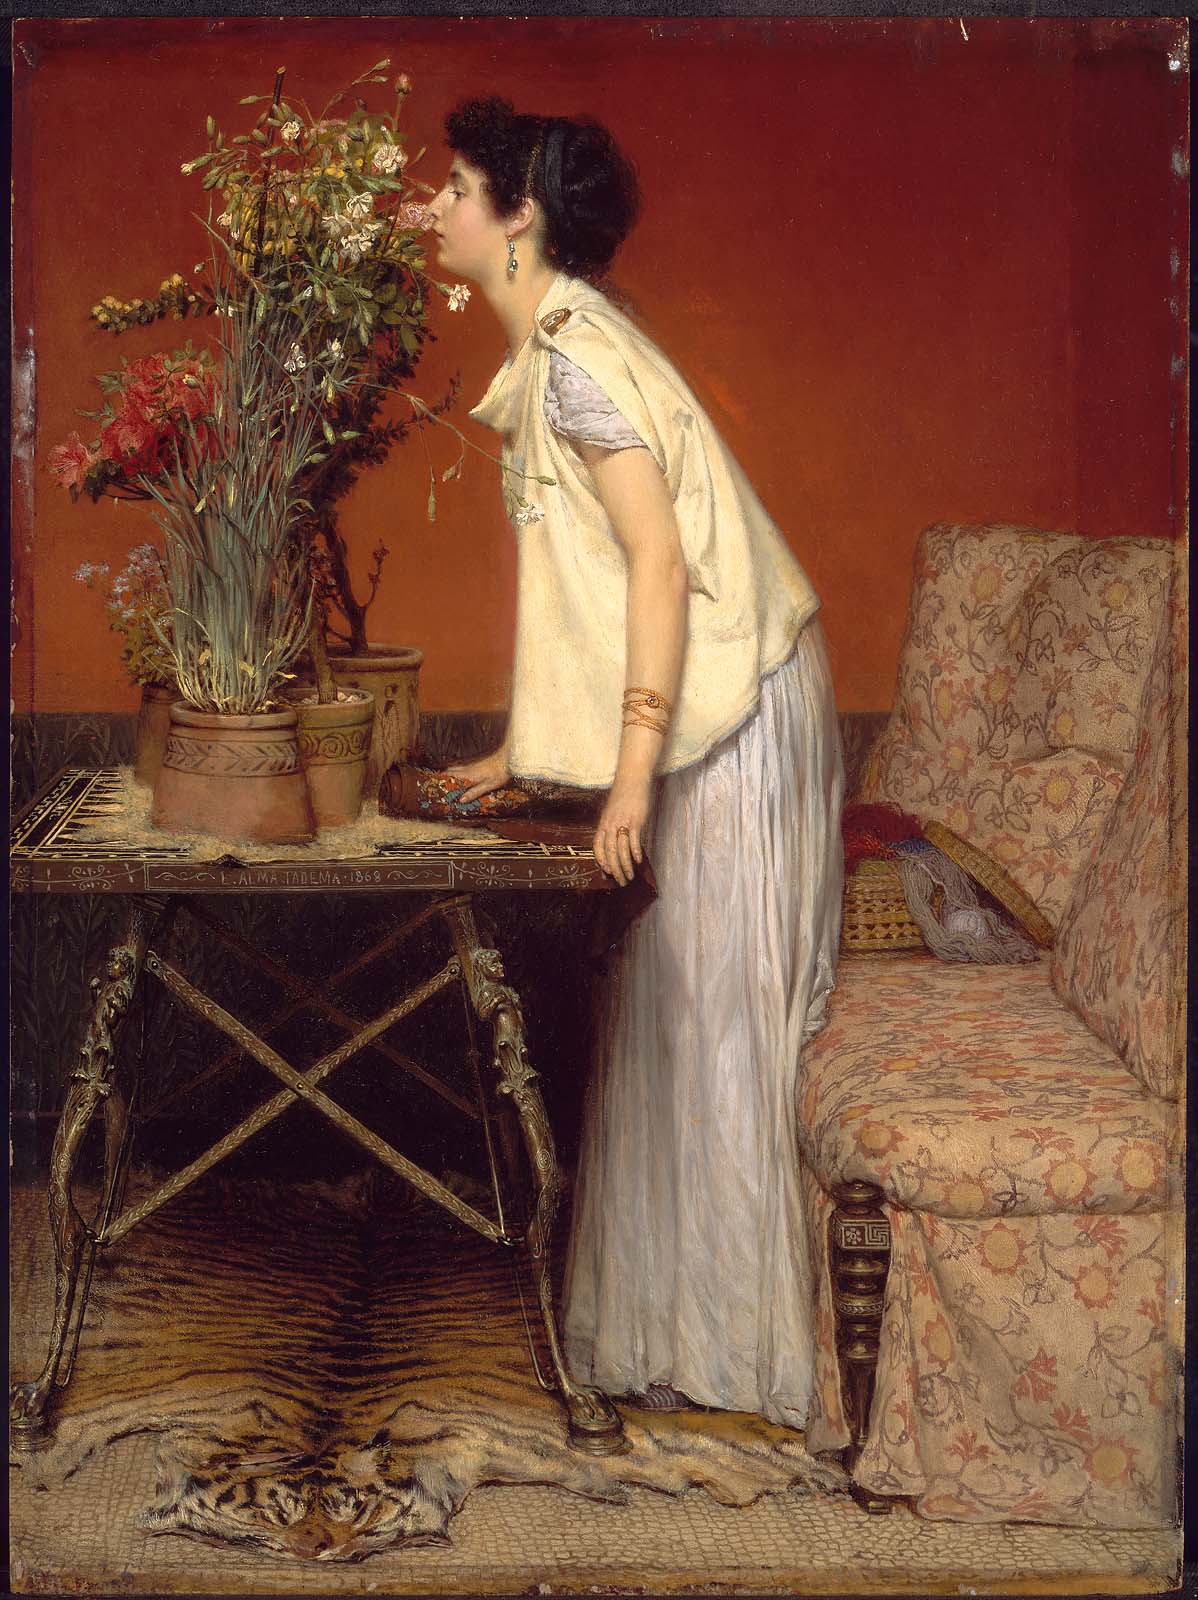 امرأة و زهور by Lawrence Alma-Tadema - 1868 - الأبعاد: 49.8x37.2سم 